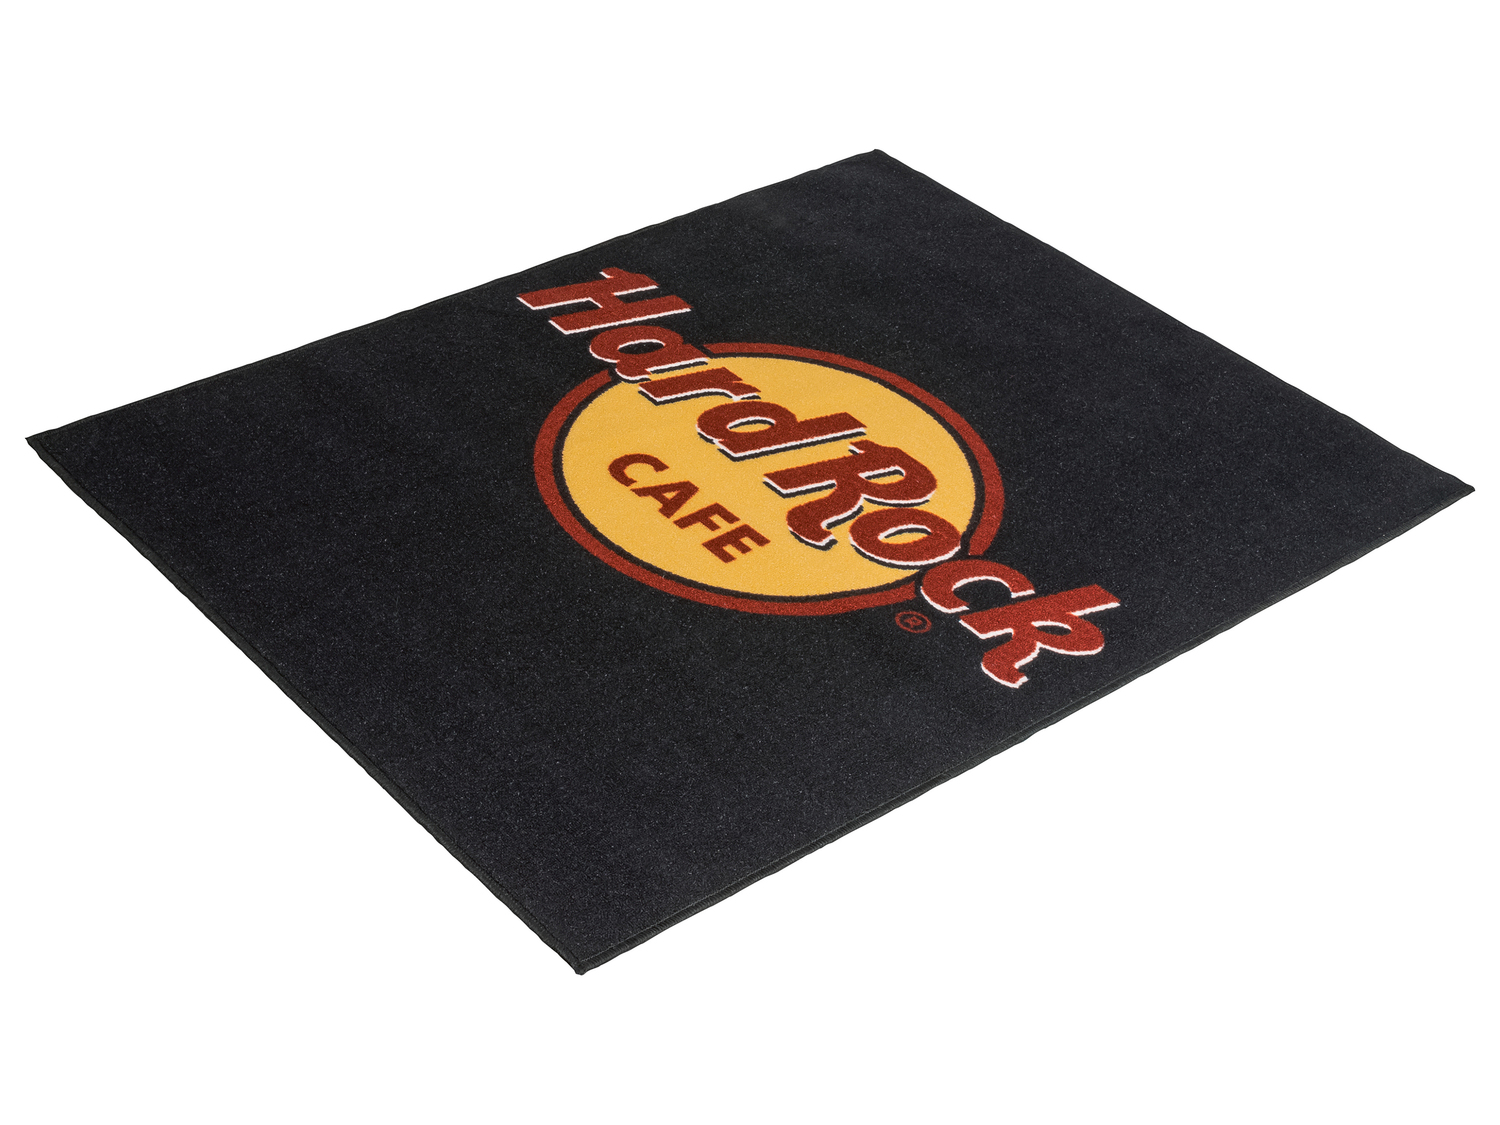 Tappeto Hard Rock Cafè Hard-rock-cafe, prezzo 17.99 € 
100 x 130 cm
Caratteristiche

- ...